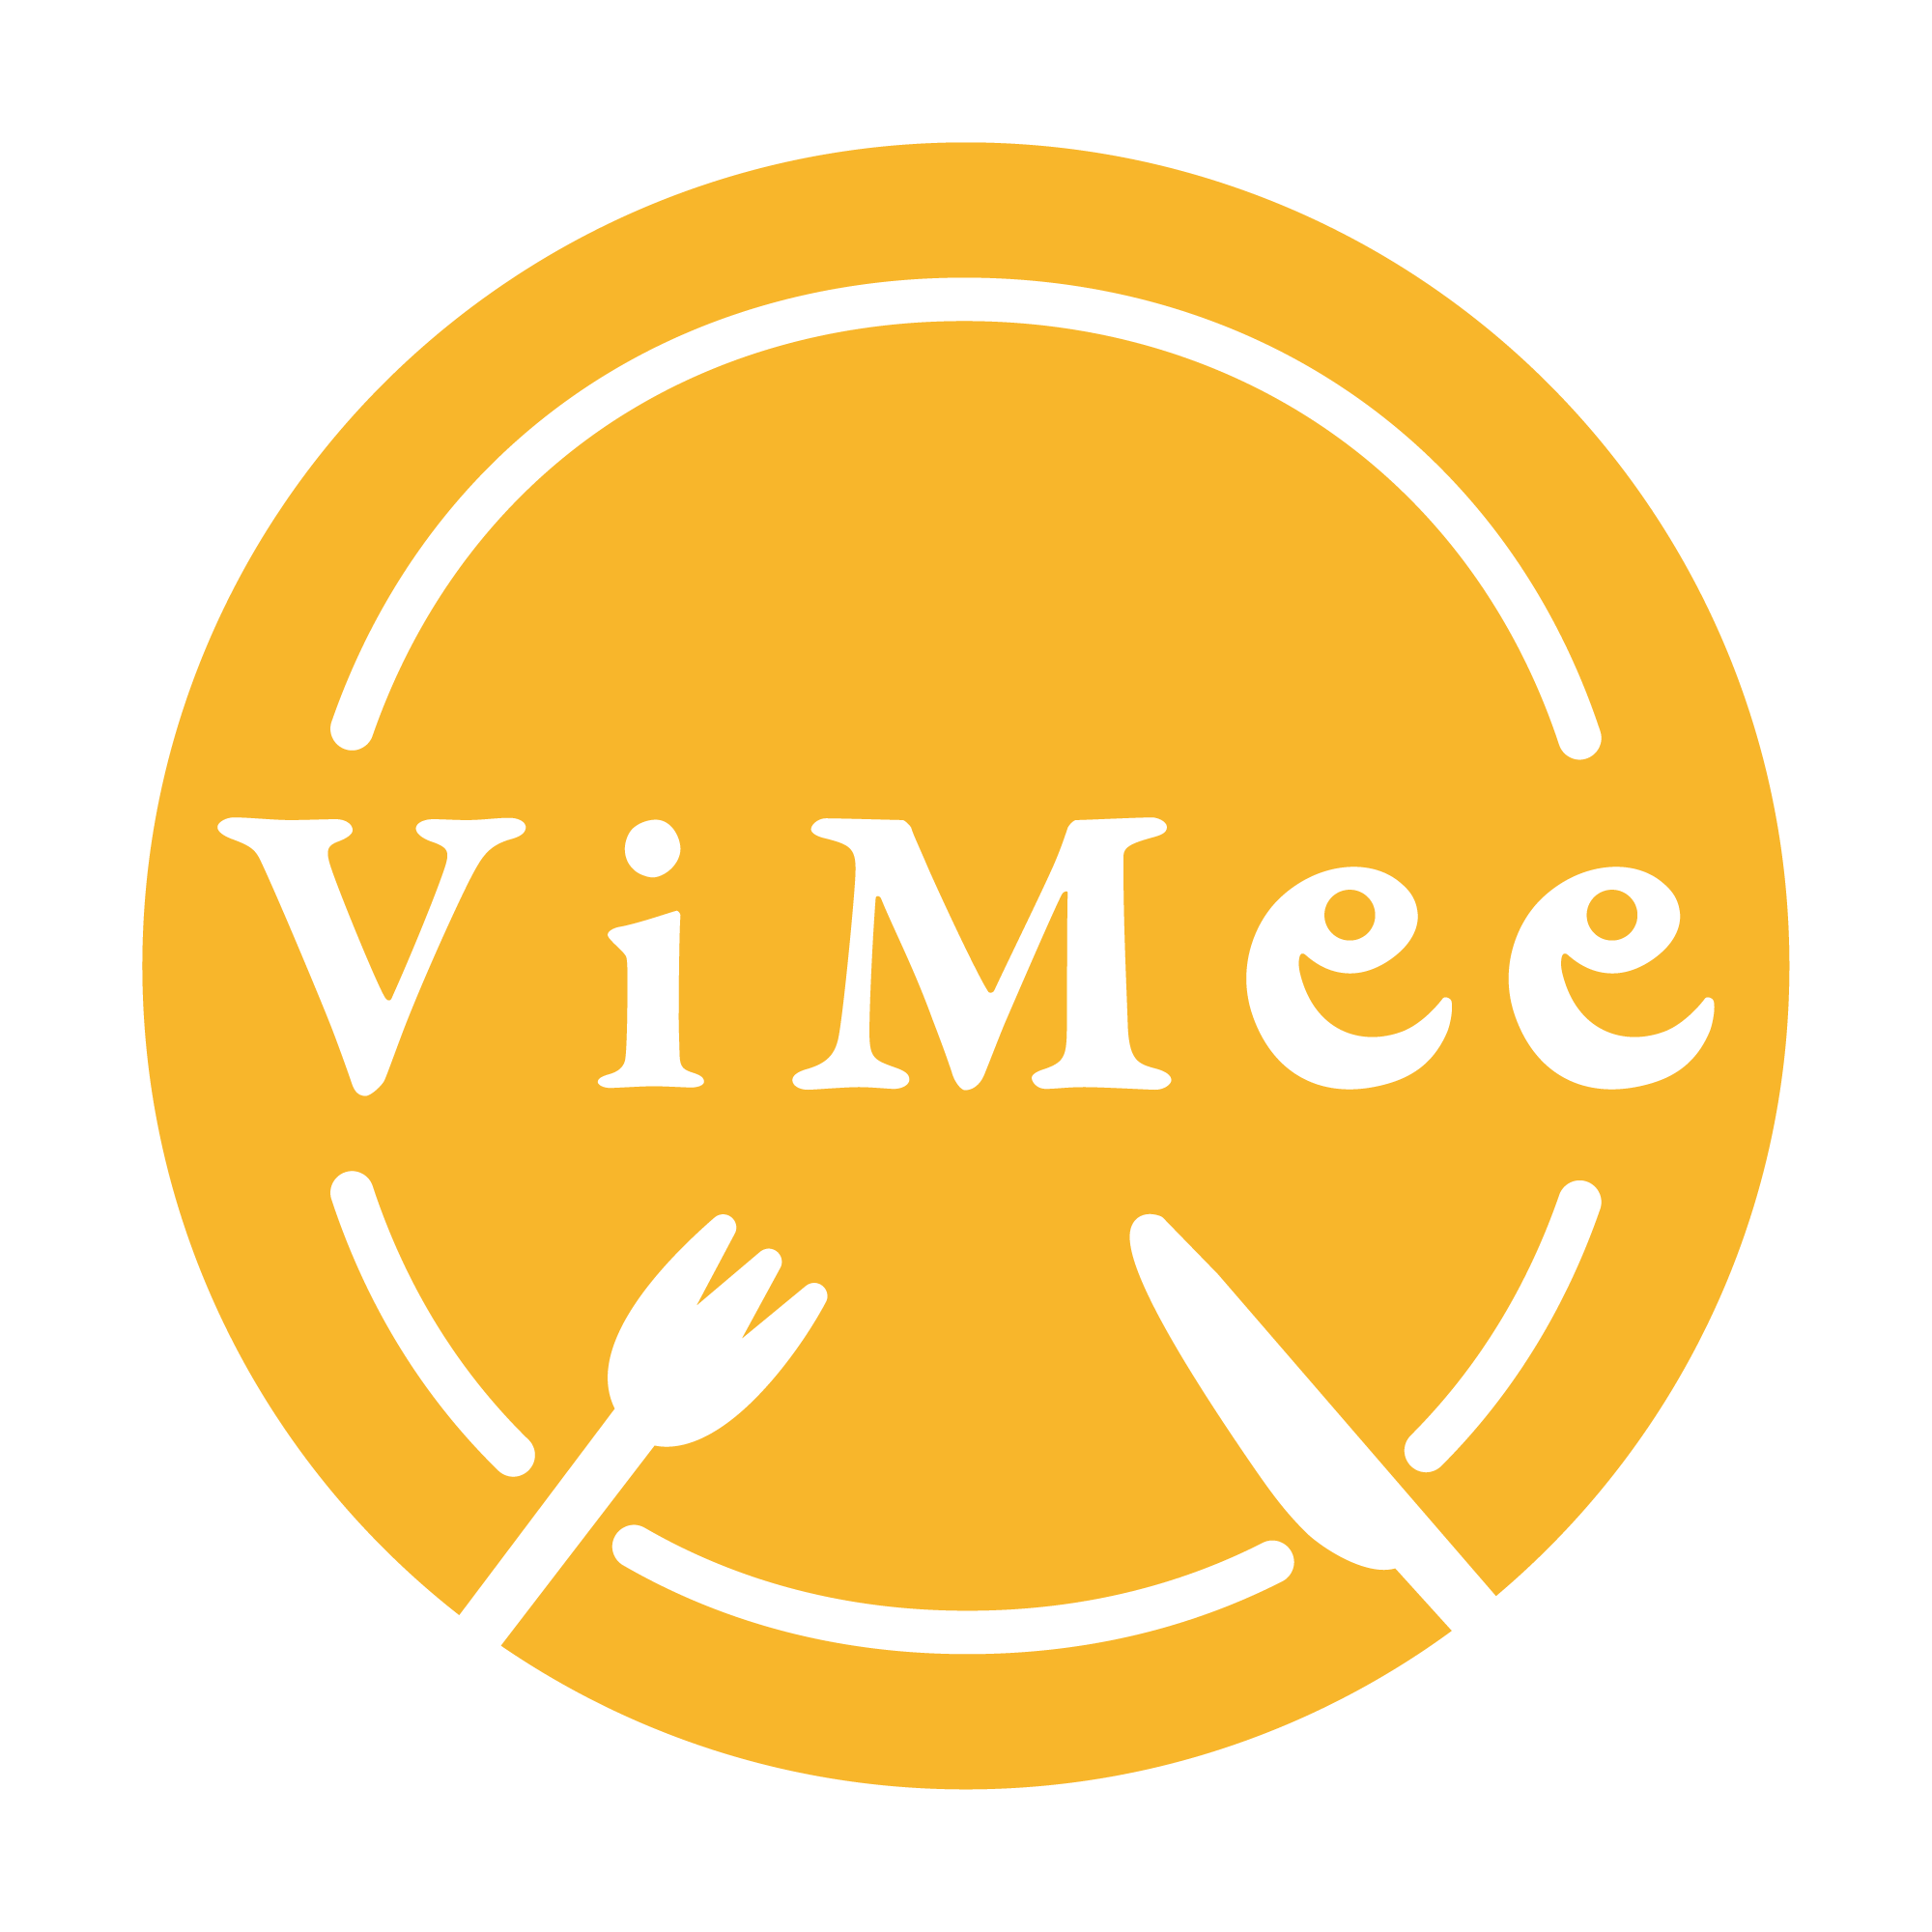 ViMee